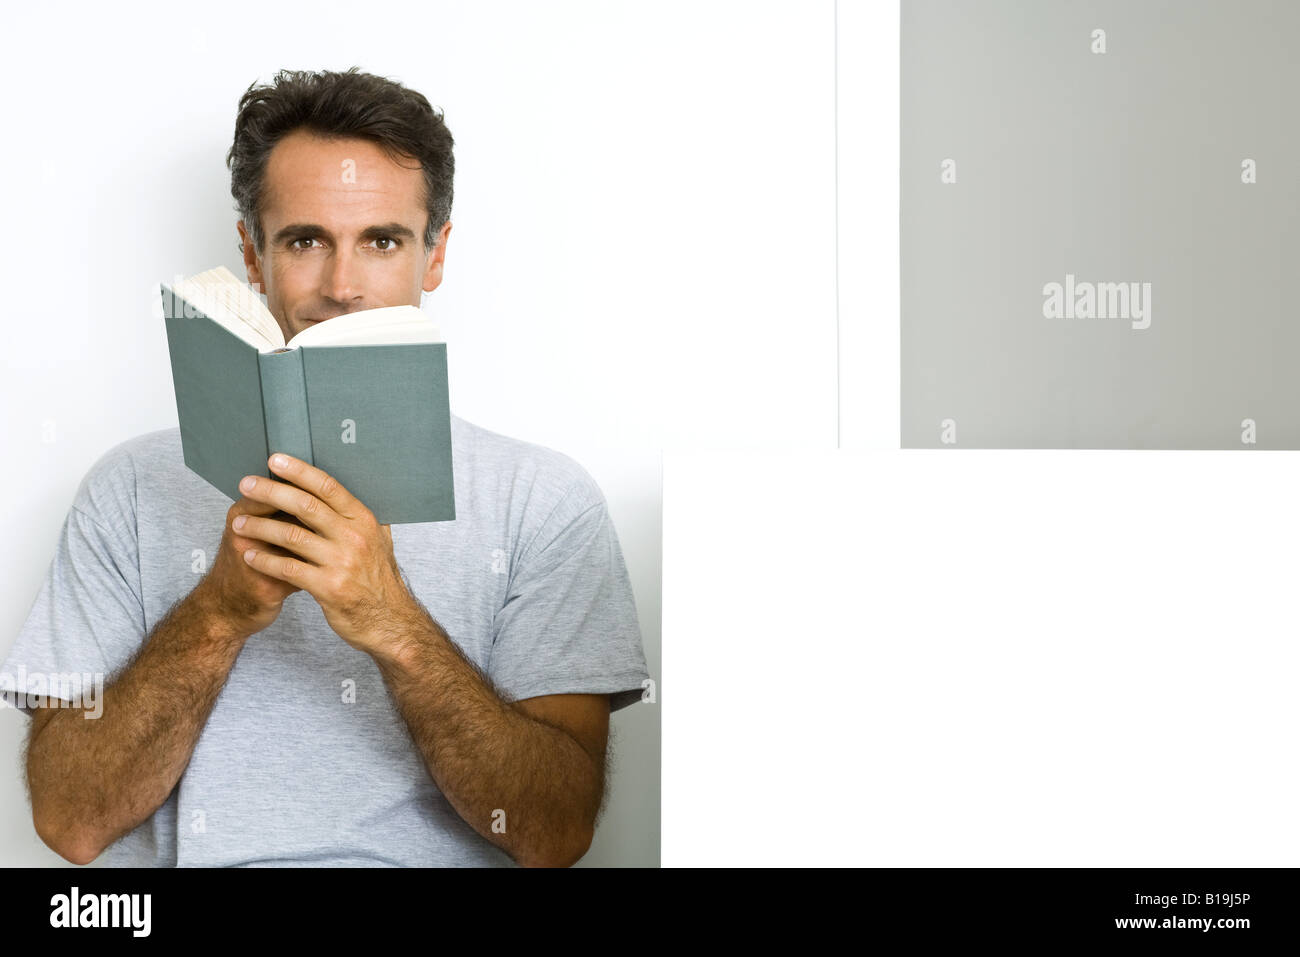 Man reading book, looking at camera Stock Photo